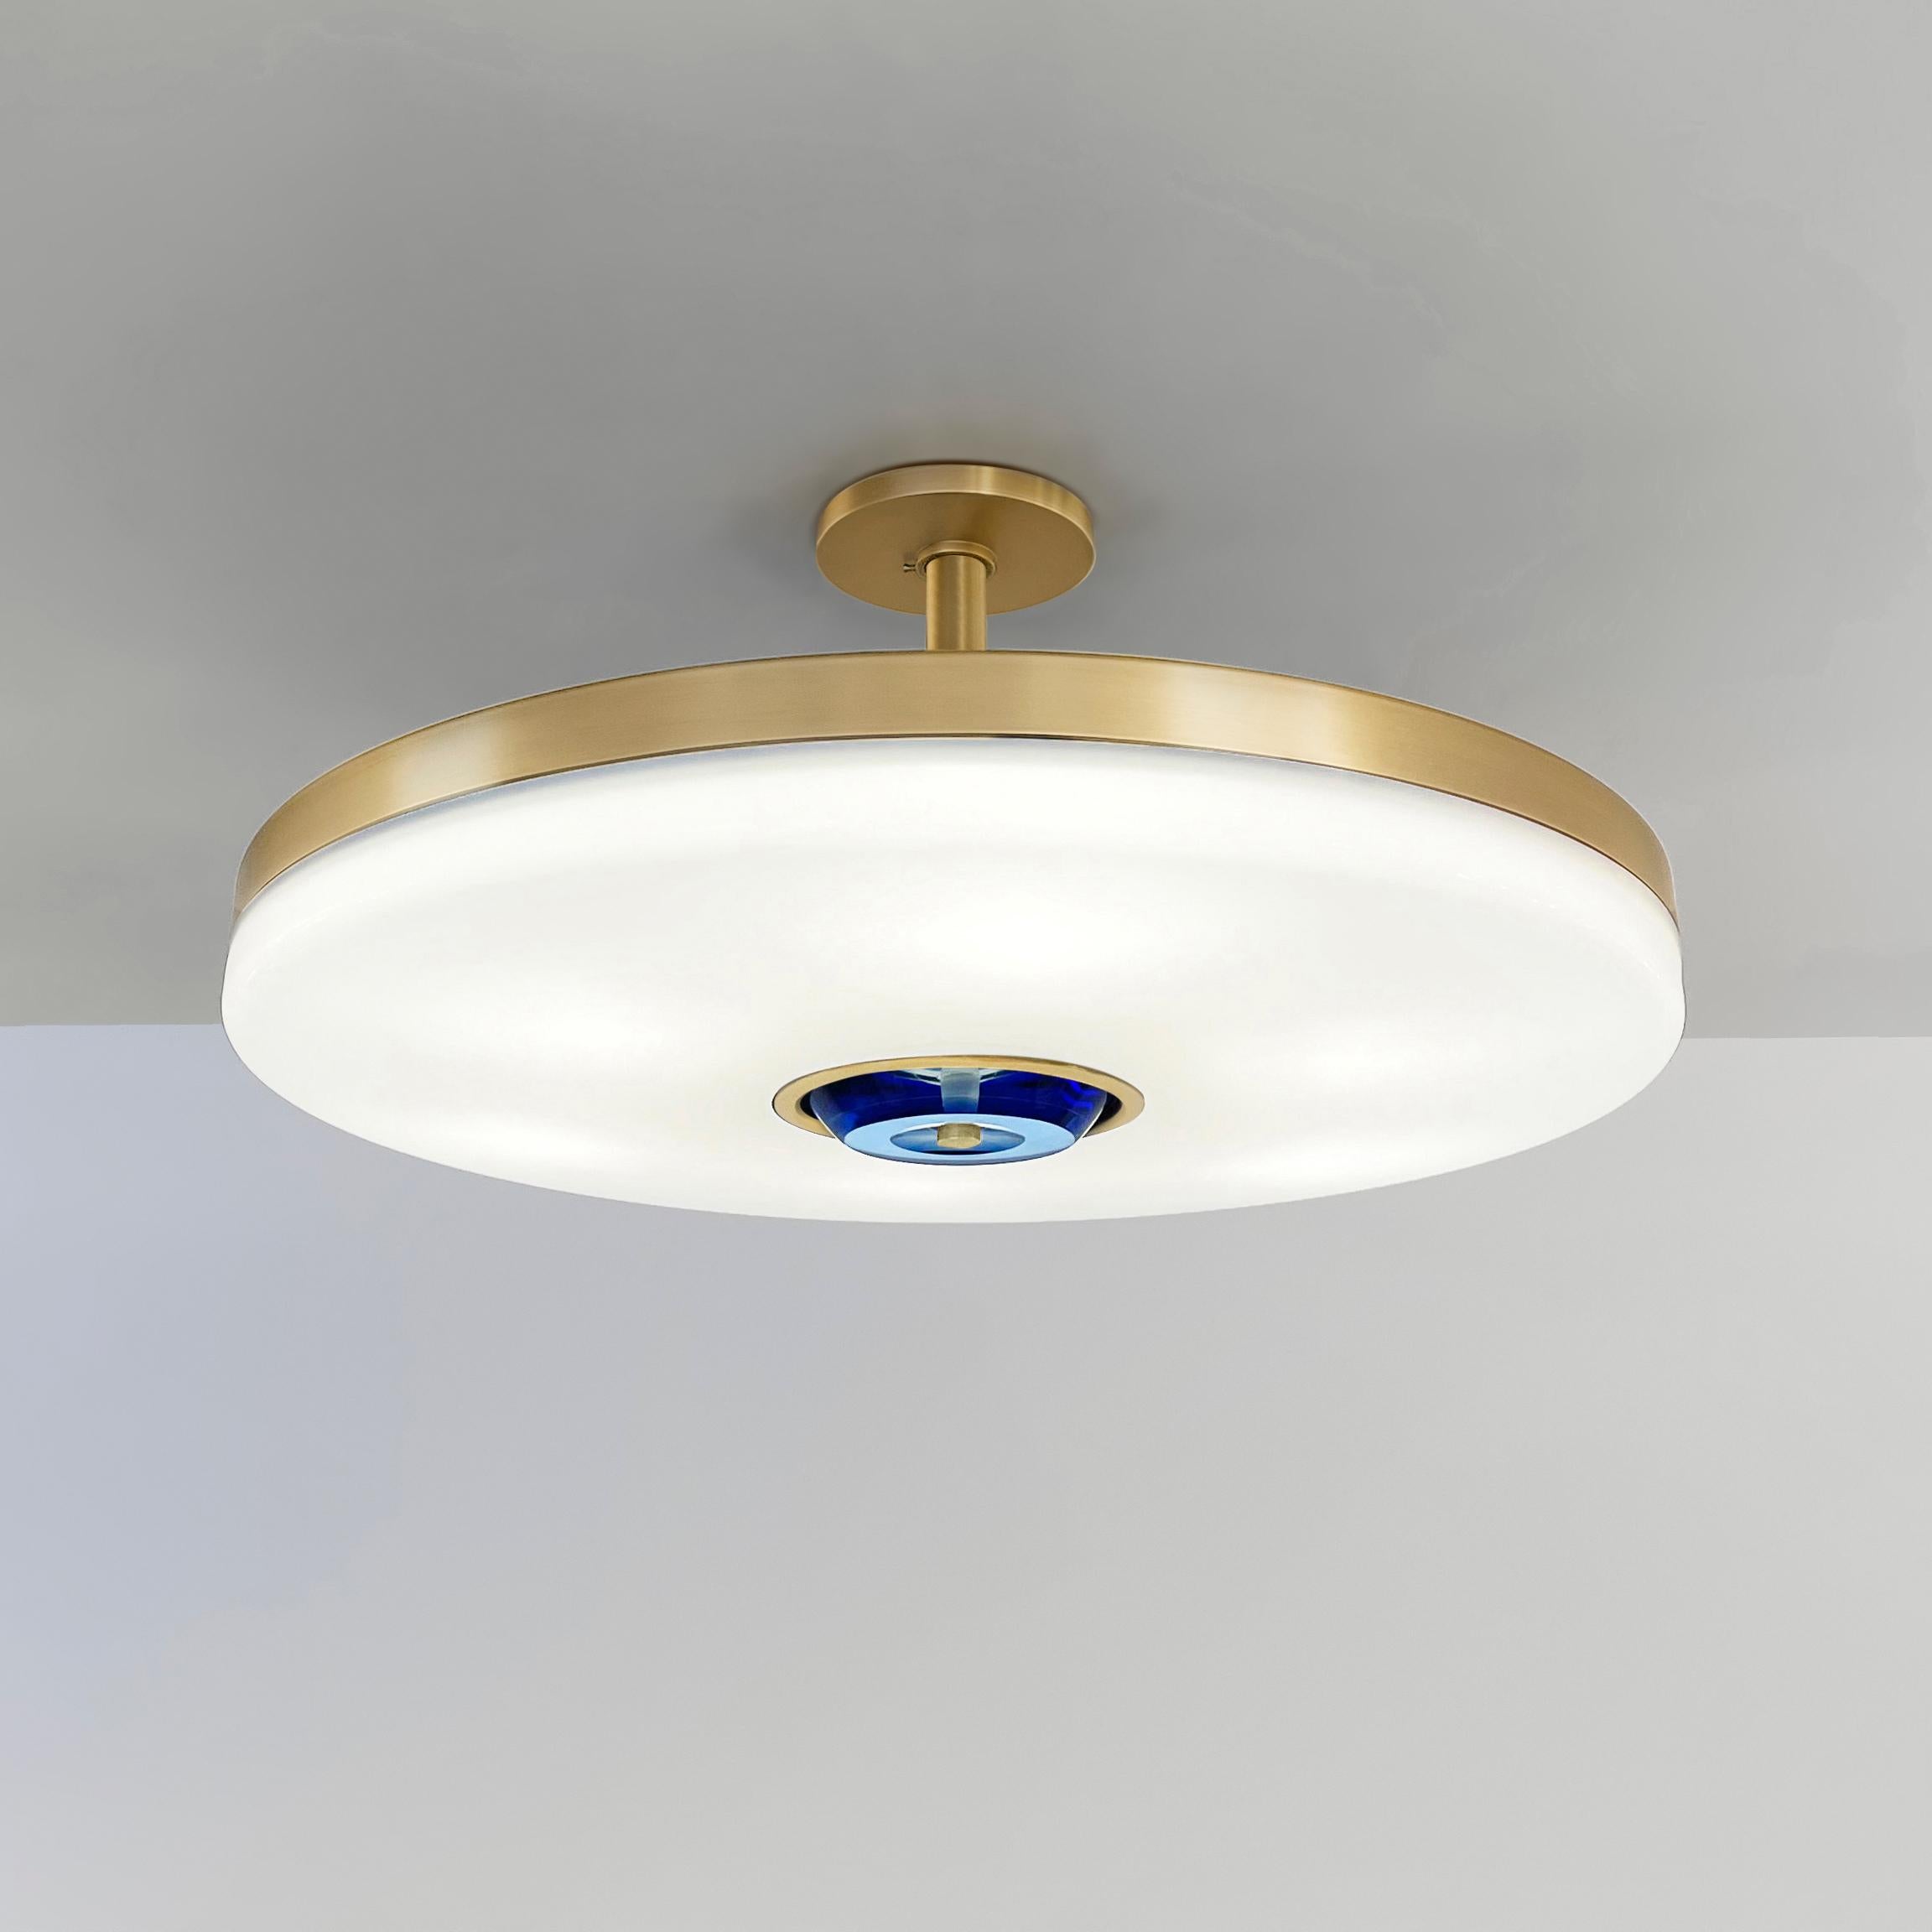 Italian Iris Ceiling Light by Gaspare Asaro - Brunito Nero Finish For Sale